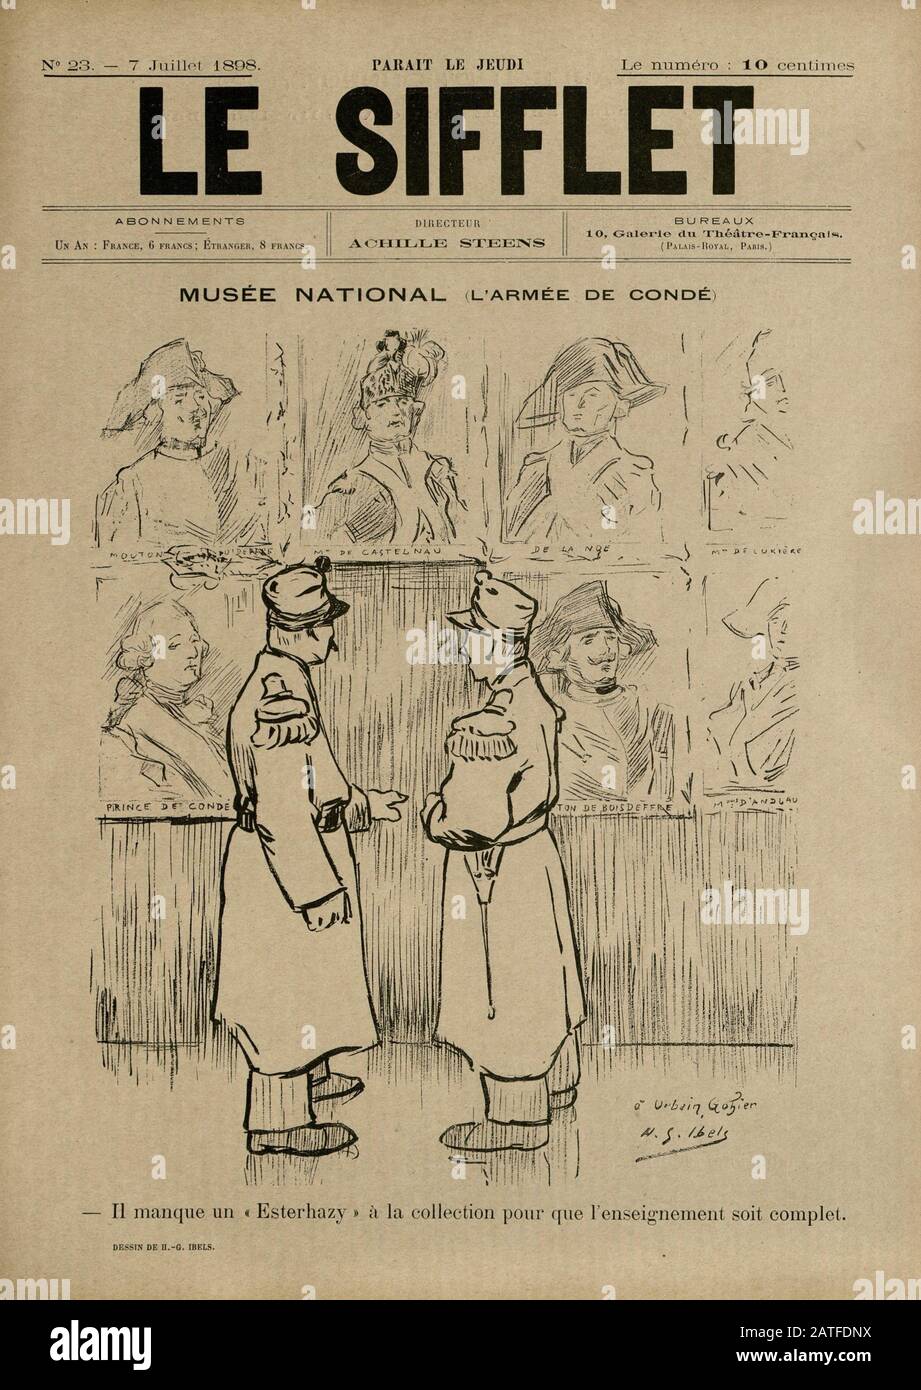 El caso Dreyfus 1894-1906 - Le Sifflet, 9 de julio de 1898 - diario ilustrado francés Foto de stock